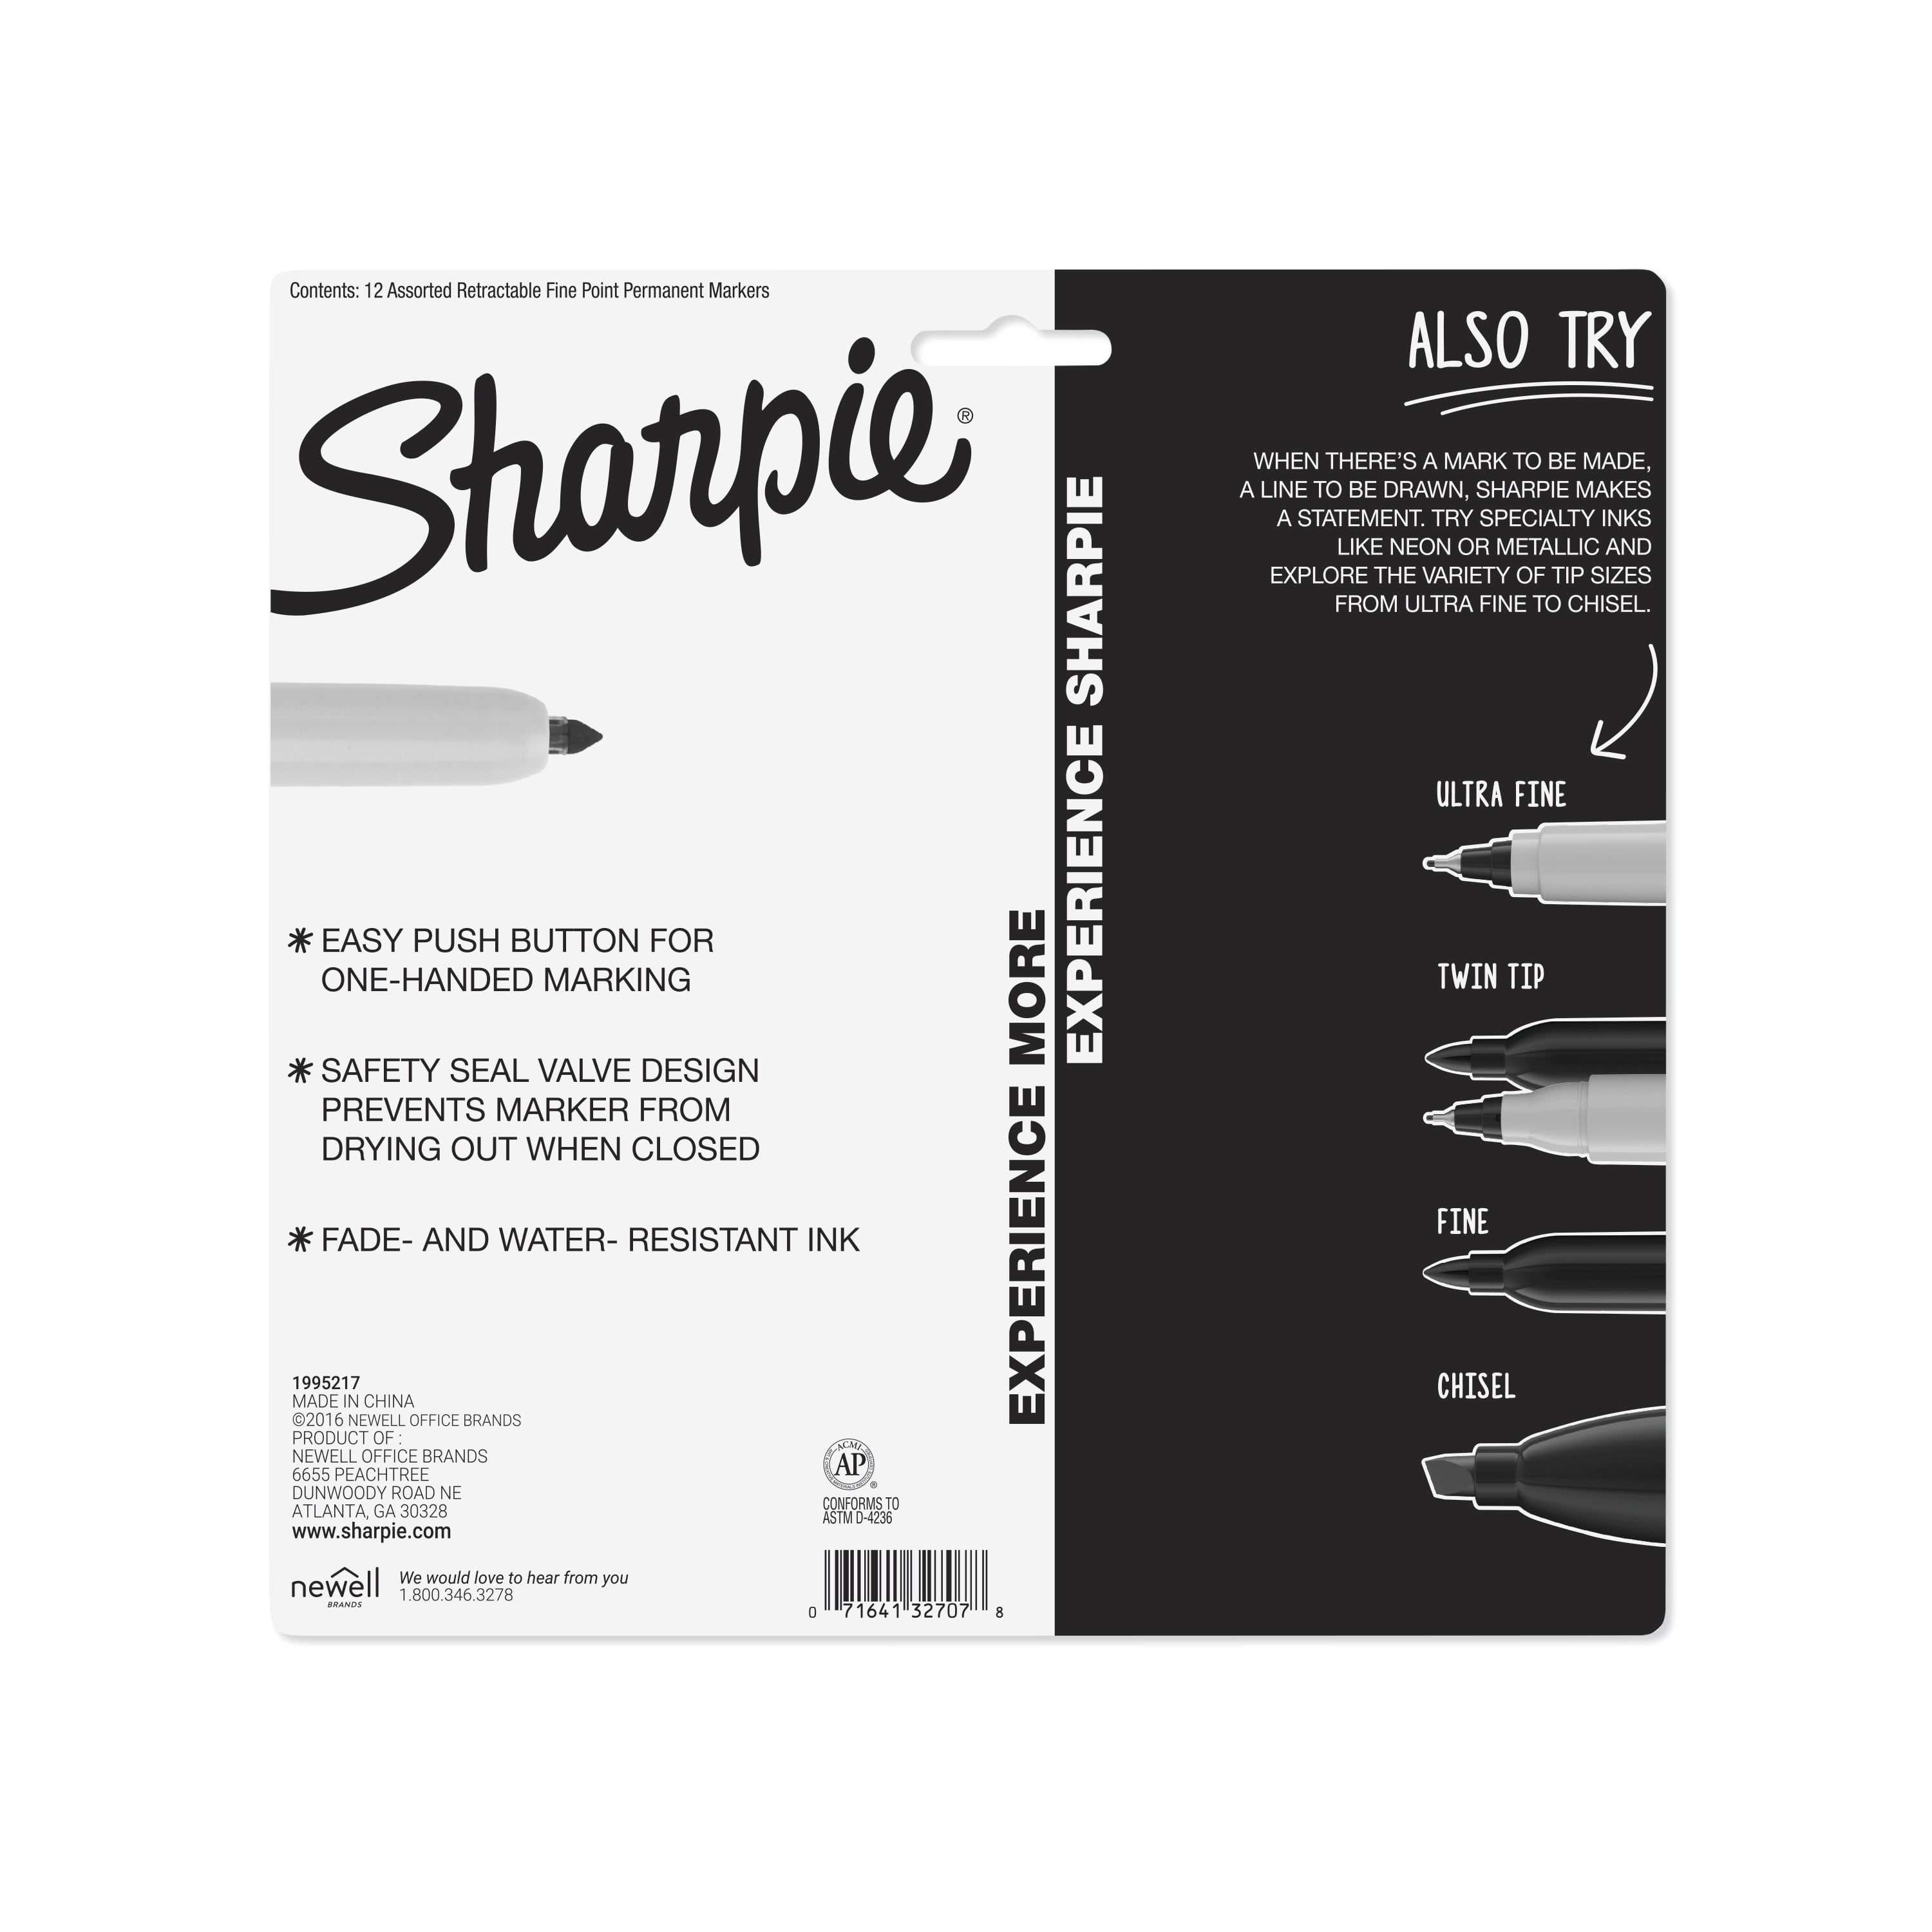 Sharpie Retractable Fine Point Permanent Marker Set, 12 Assorted Colors